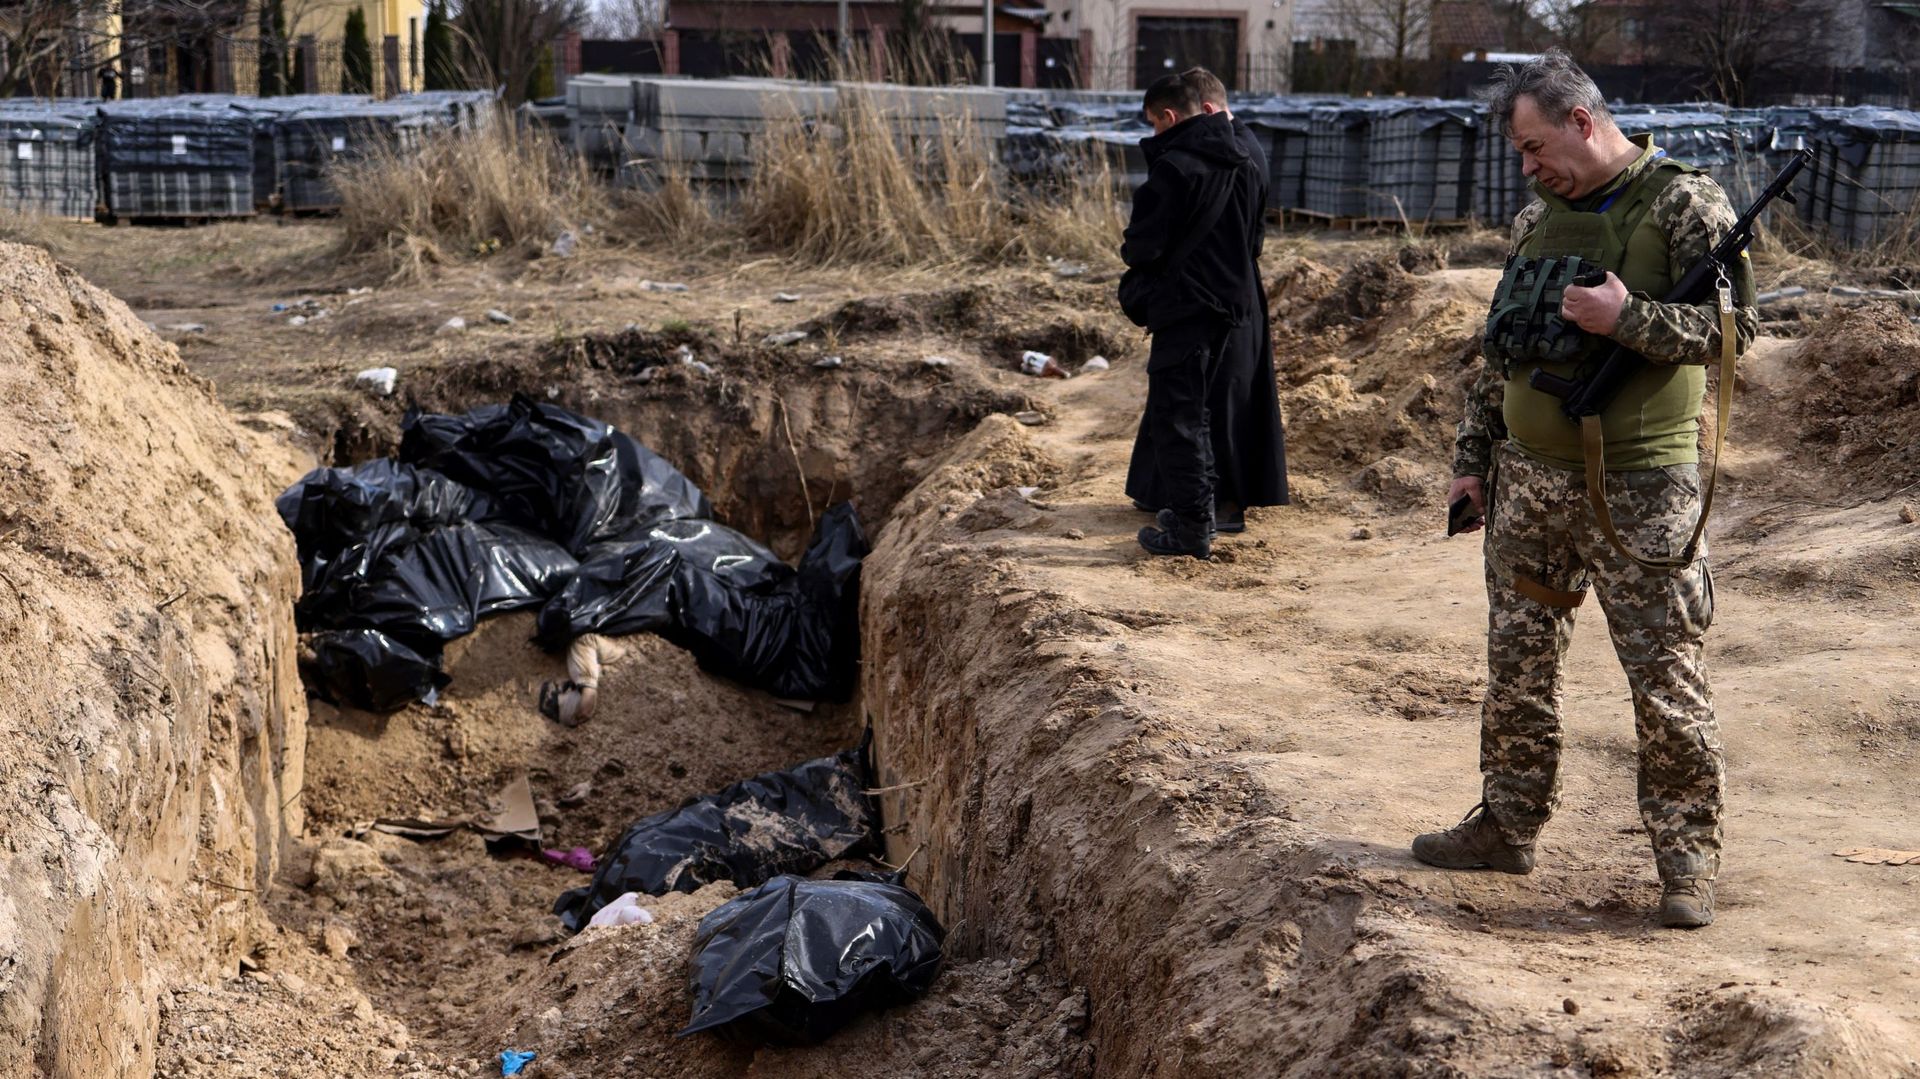 Un soldat ukrainien regarde des sacs mortuaires tandis que des prêtres prient devant une fosse commune dans les environs de l’église Saint-André à Bucha, le 7 avril 2022, dans le cadre de l’invasion militaire lancée par la Russie en Ukraine.